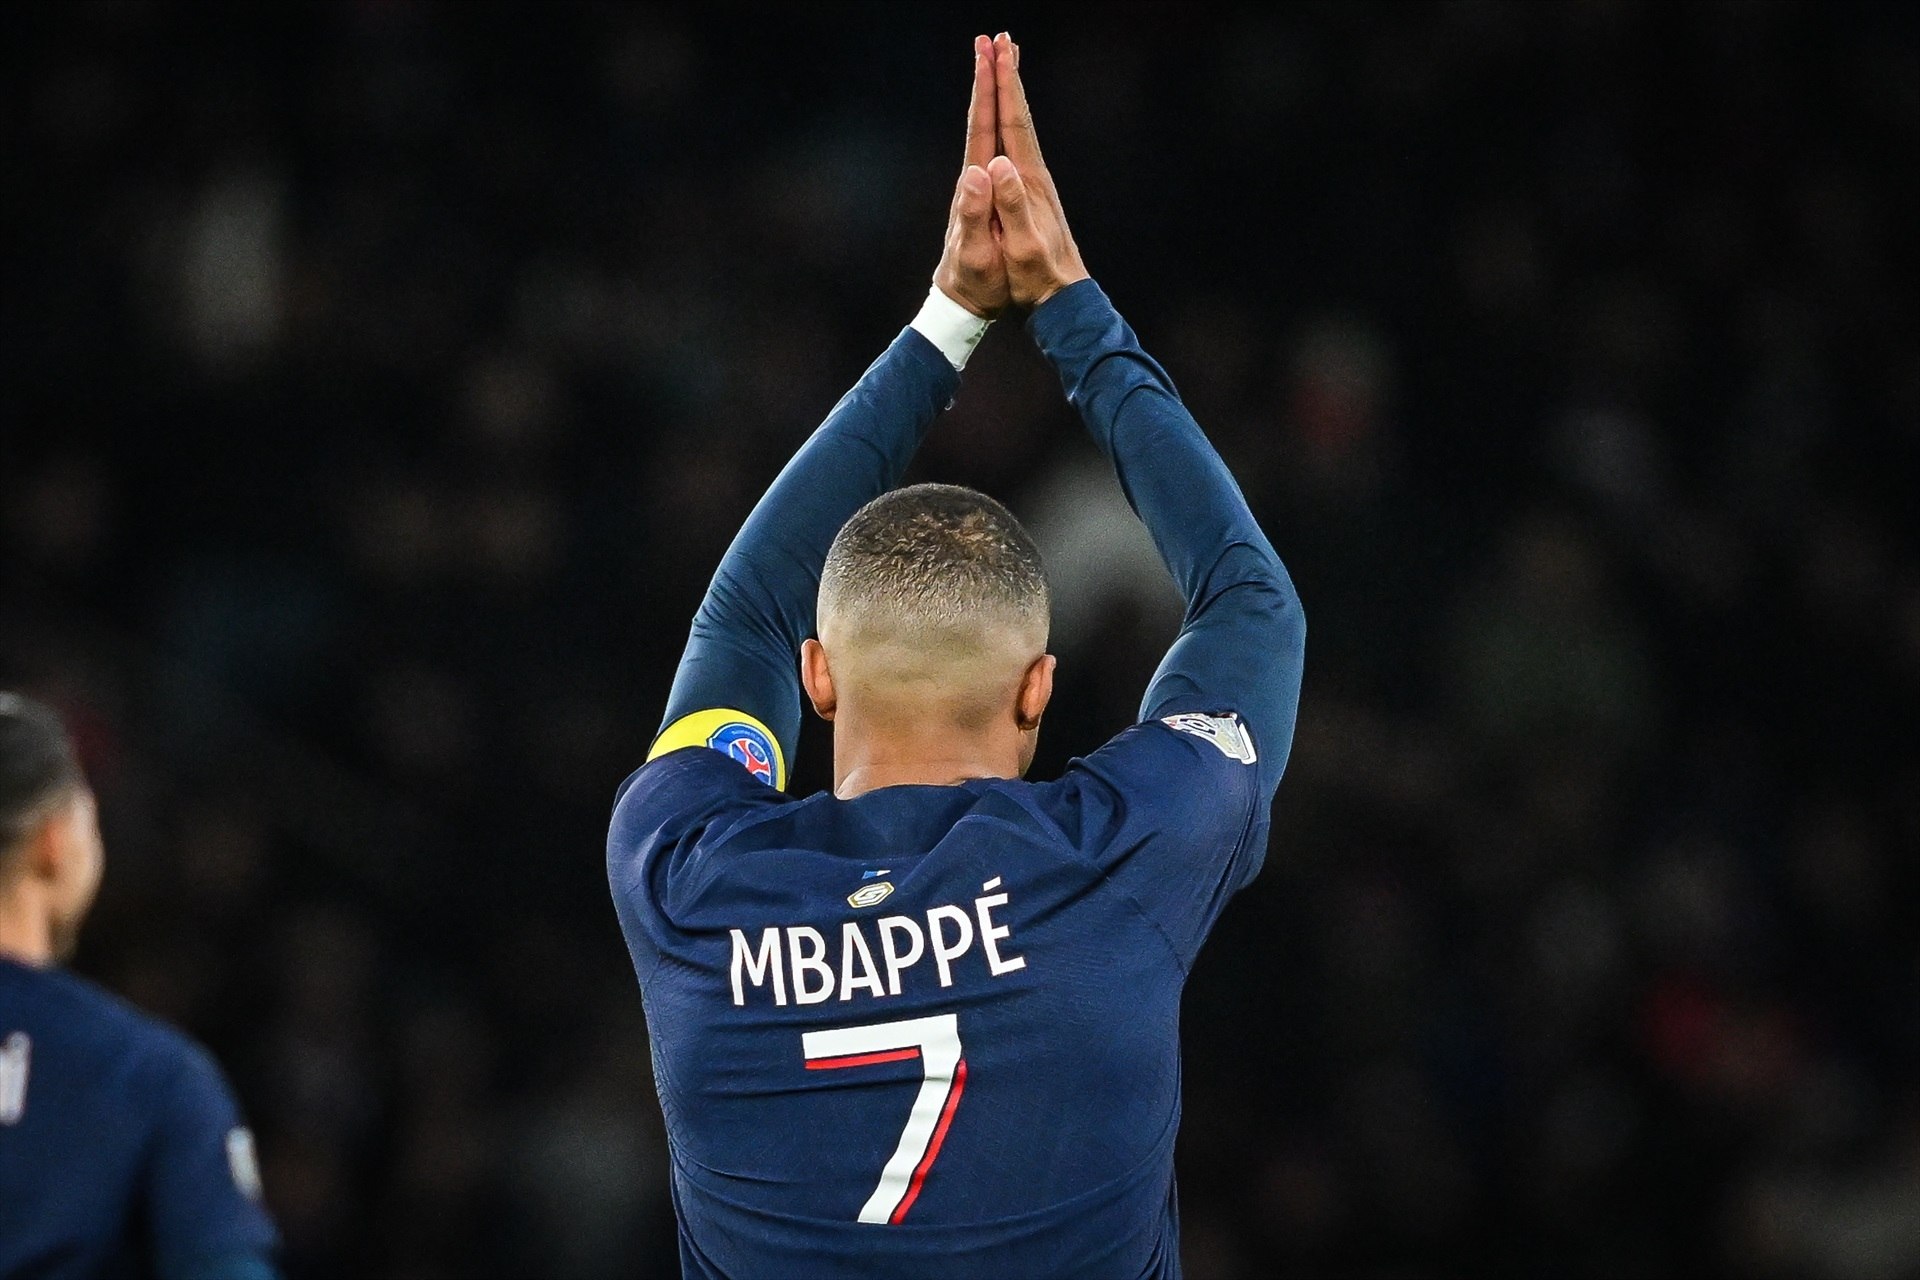 Recta final del serial de Kylian Mbappé: des de França asseguren que ha triat el Reial Madrid